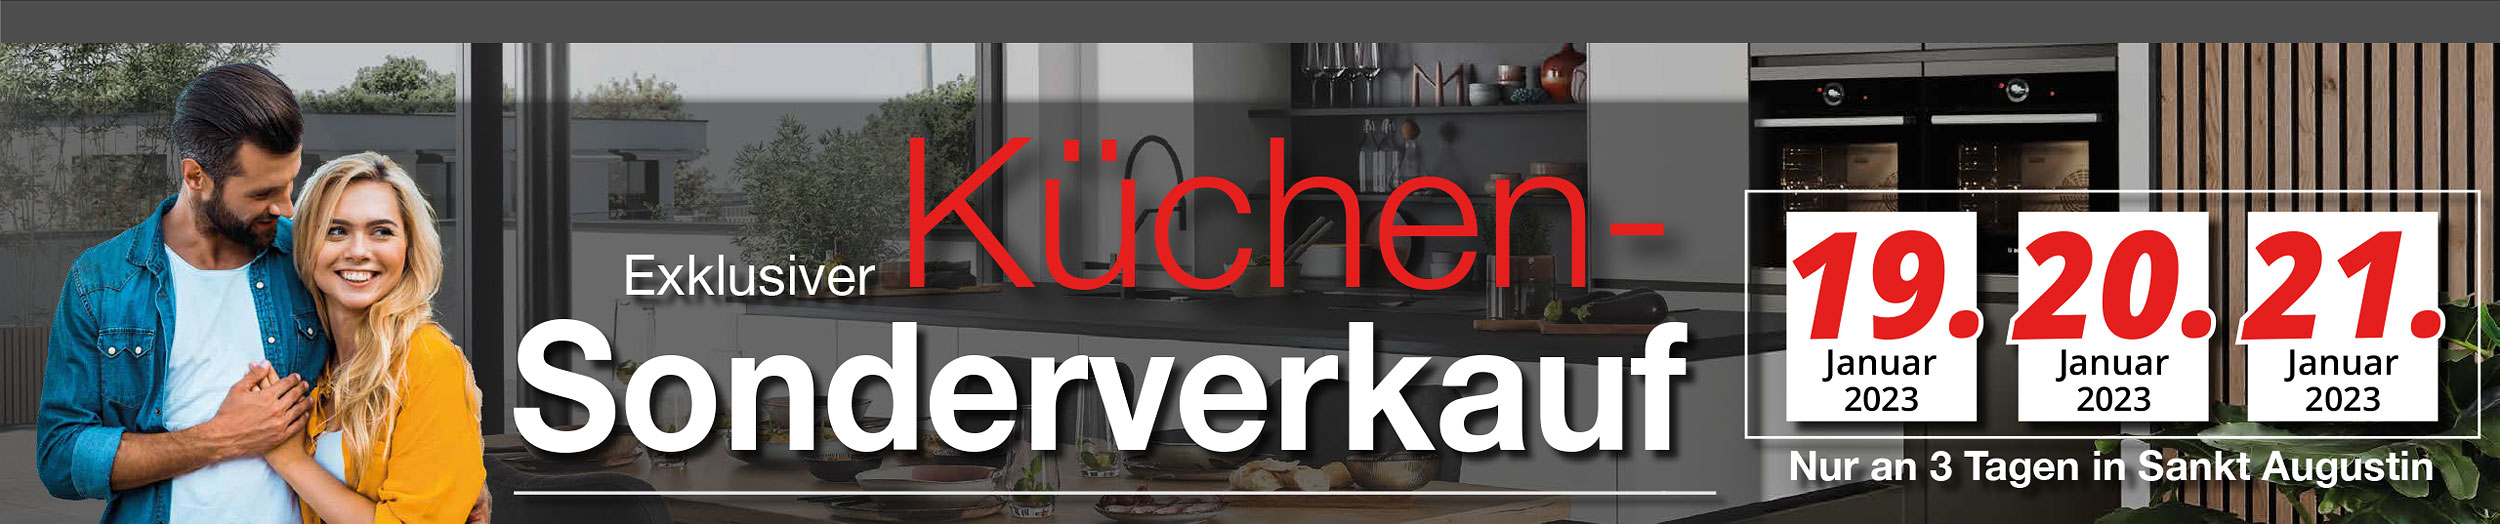 Exklusiver Küchen-Sonderverkauf vom 19. - 21. Januar 2023